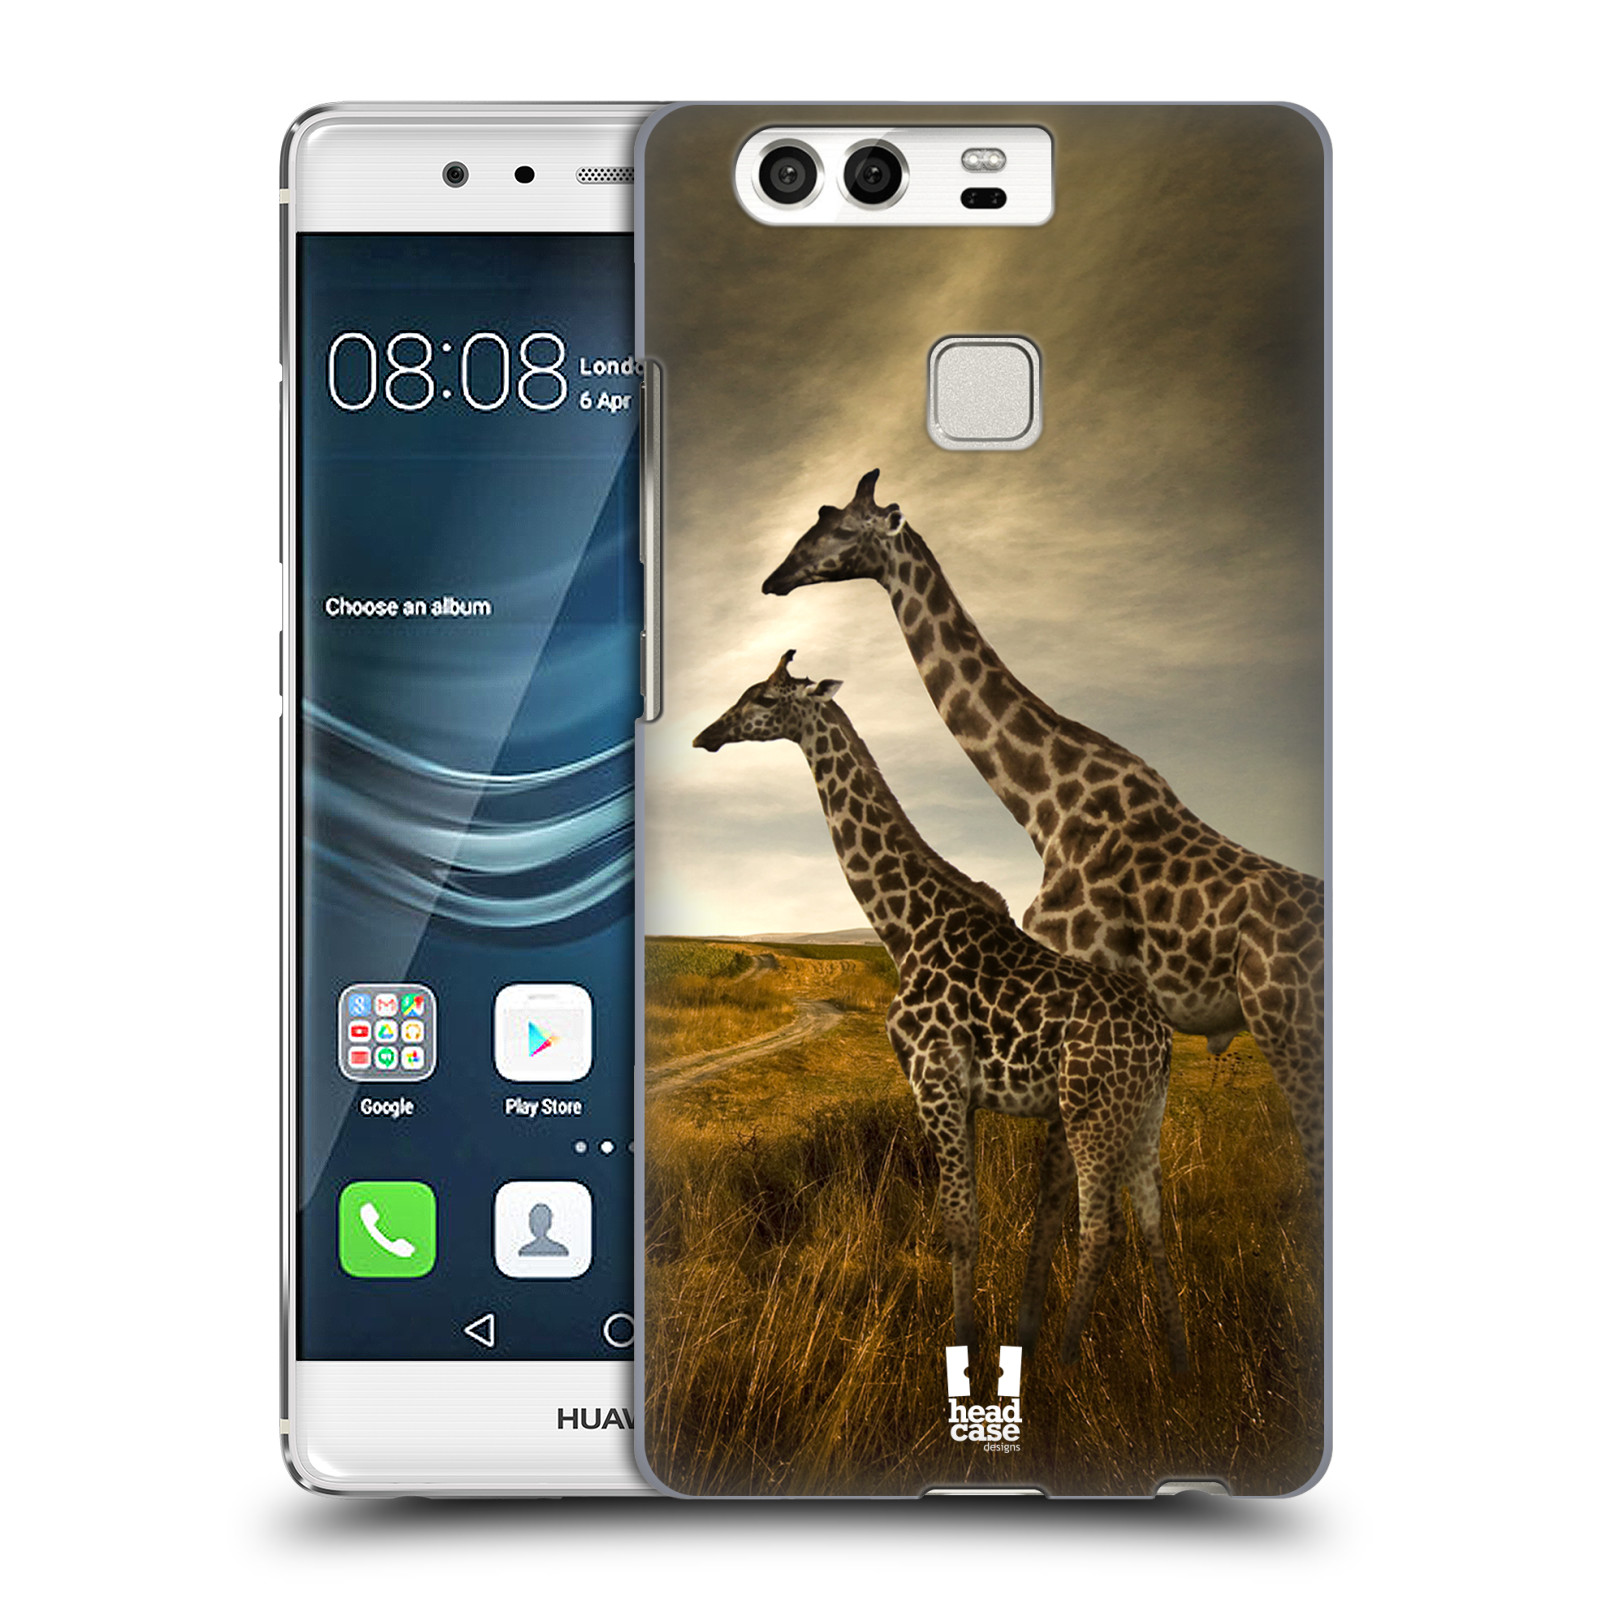 HEAD CASE plastový obal na mobil Huawei P9 / P9 DUAL SIM vzor Divočina, Divoký život a zvířata foto AFRIKA ŽIRAFY VÝHLED